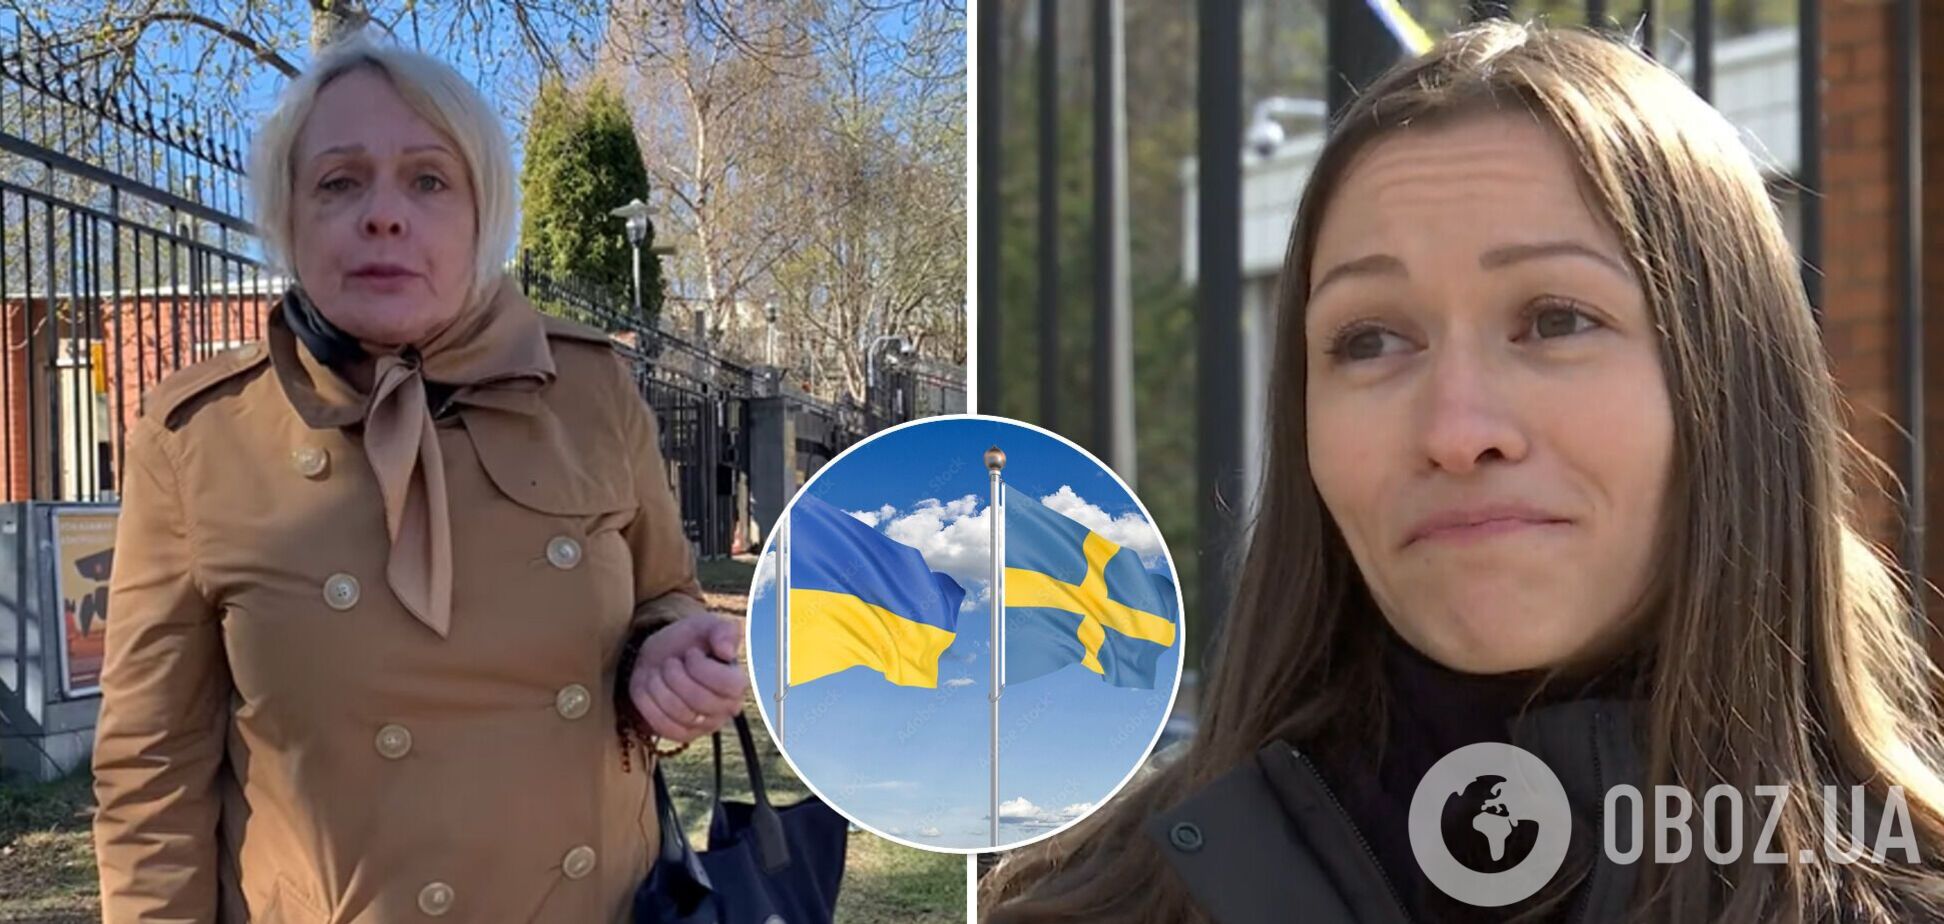 Обзывала проституткой и топтала флаг Украины. Украинка раскрыла детали инцидента с россиянкой в Швеции